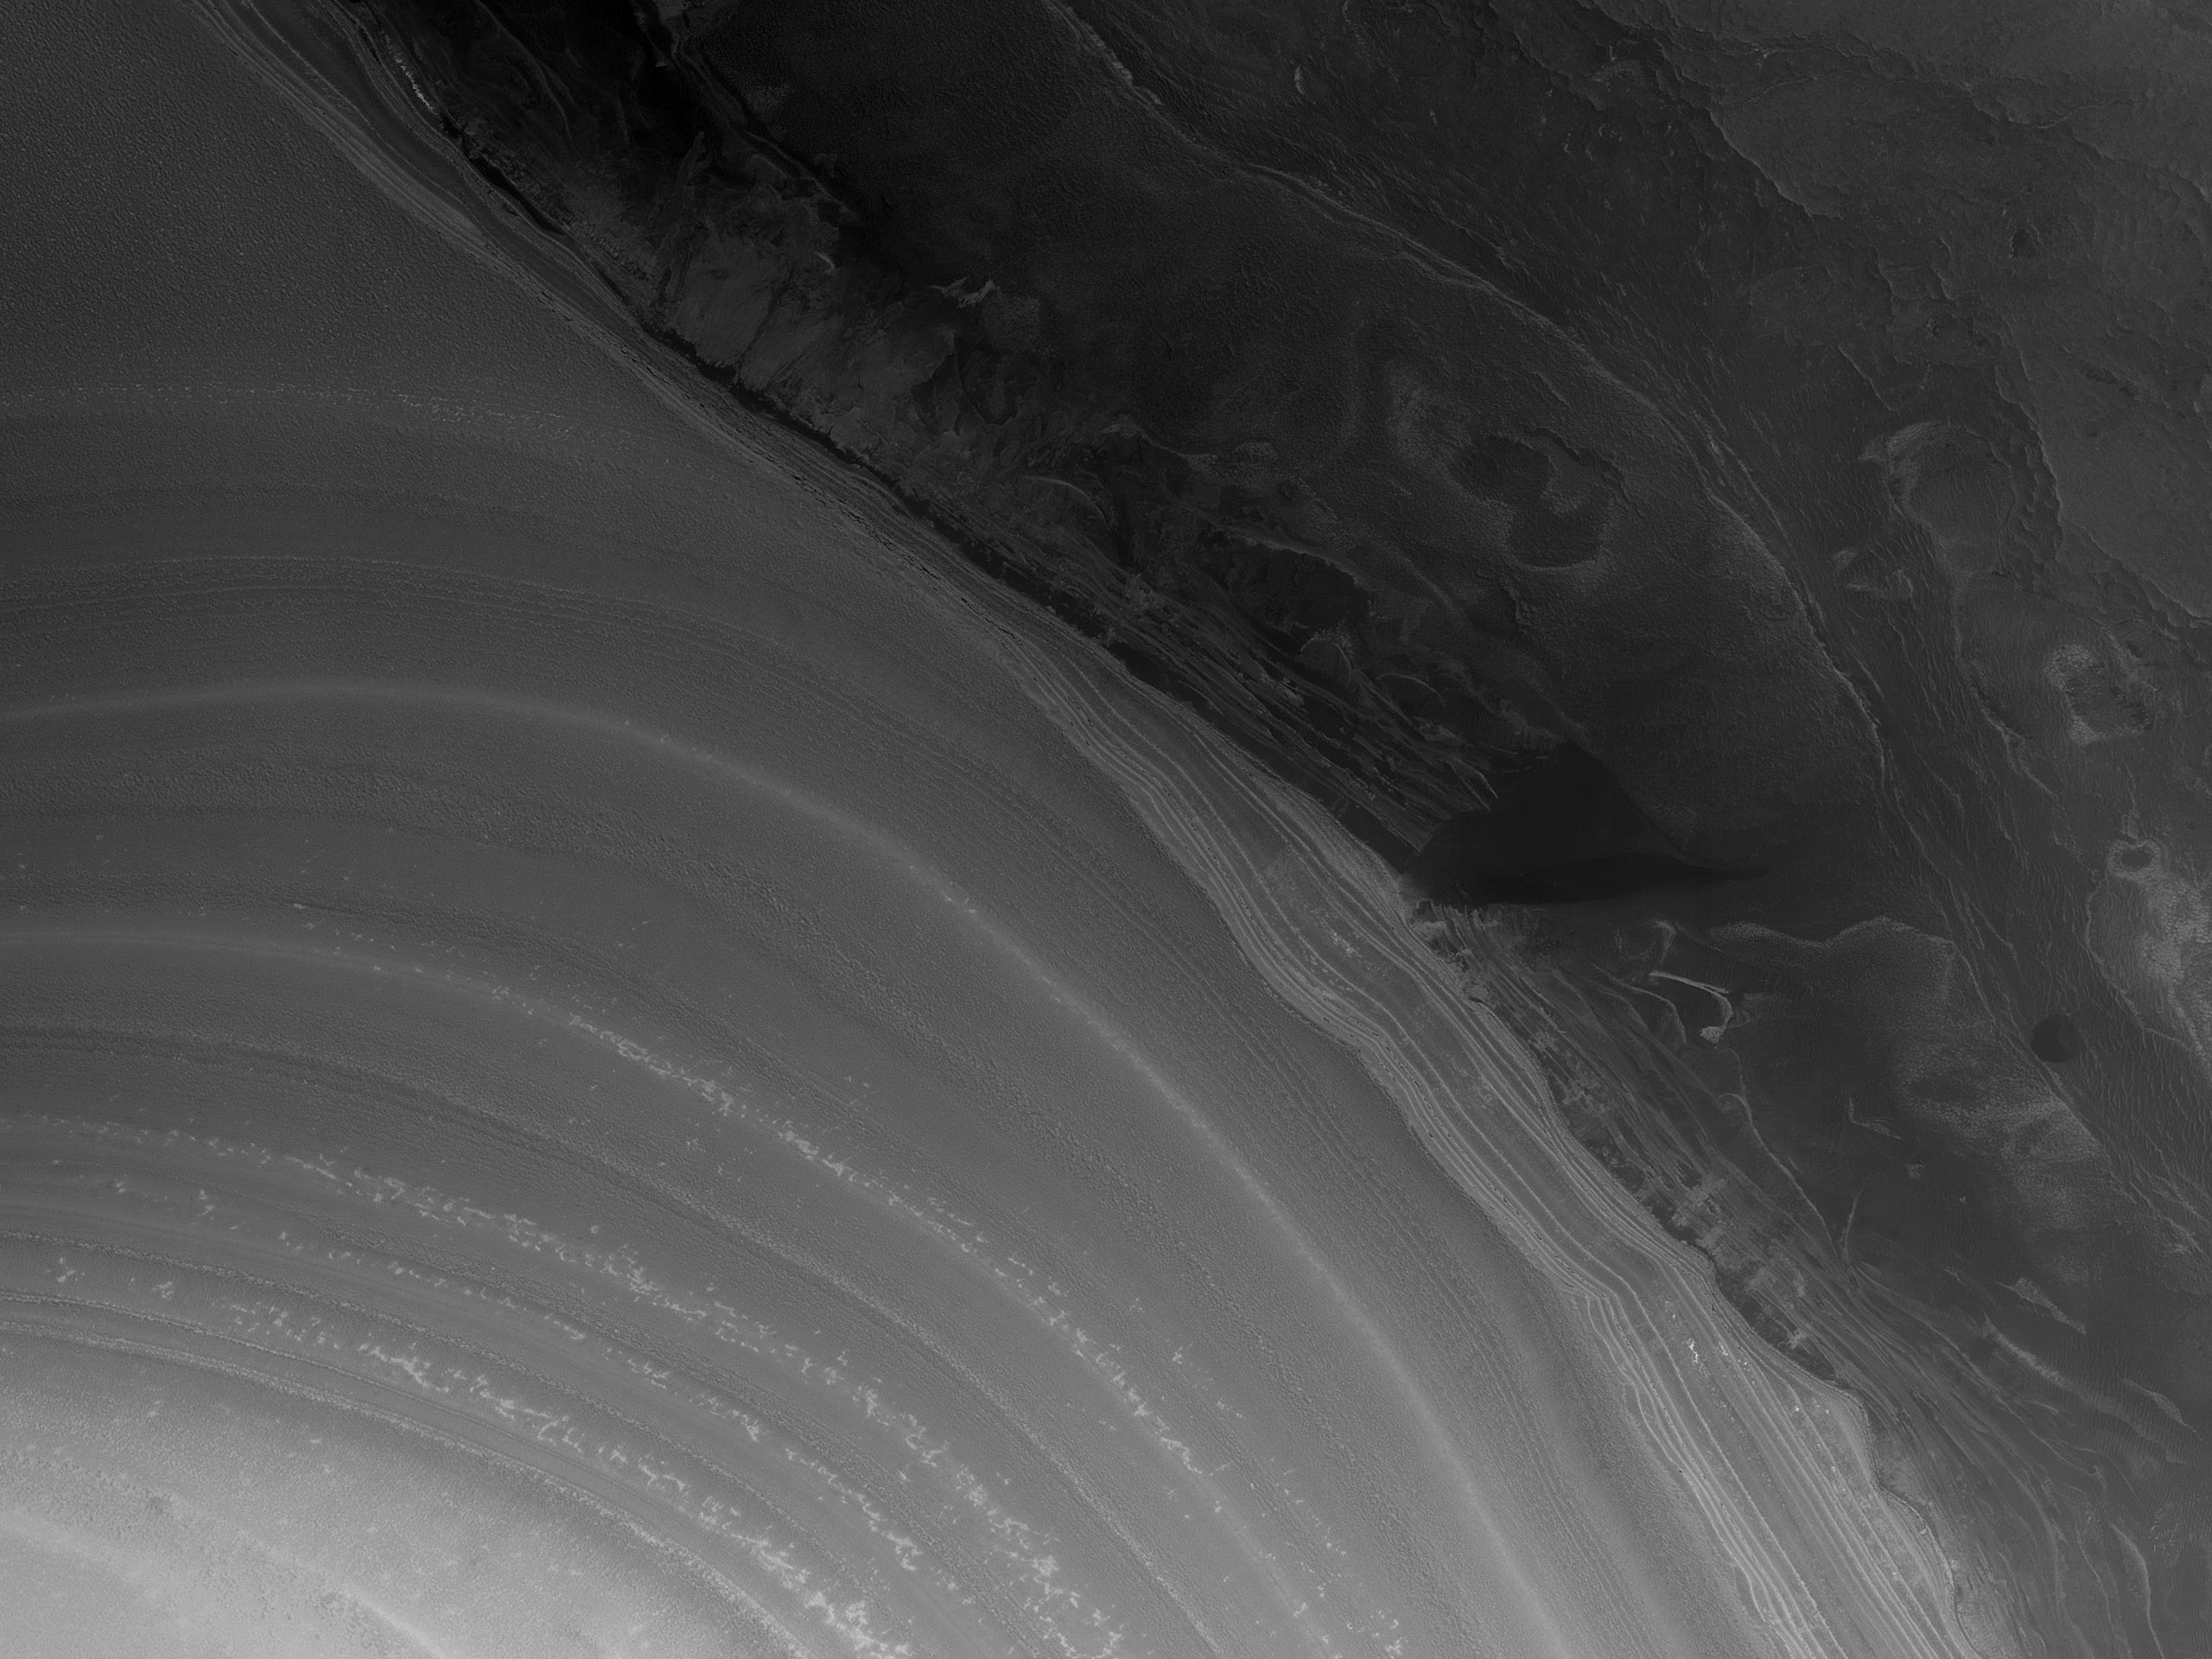 Meredek letörés a réteges lerakódások peremén a Mars északi sarkán